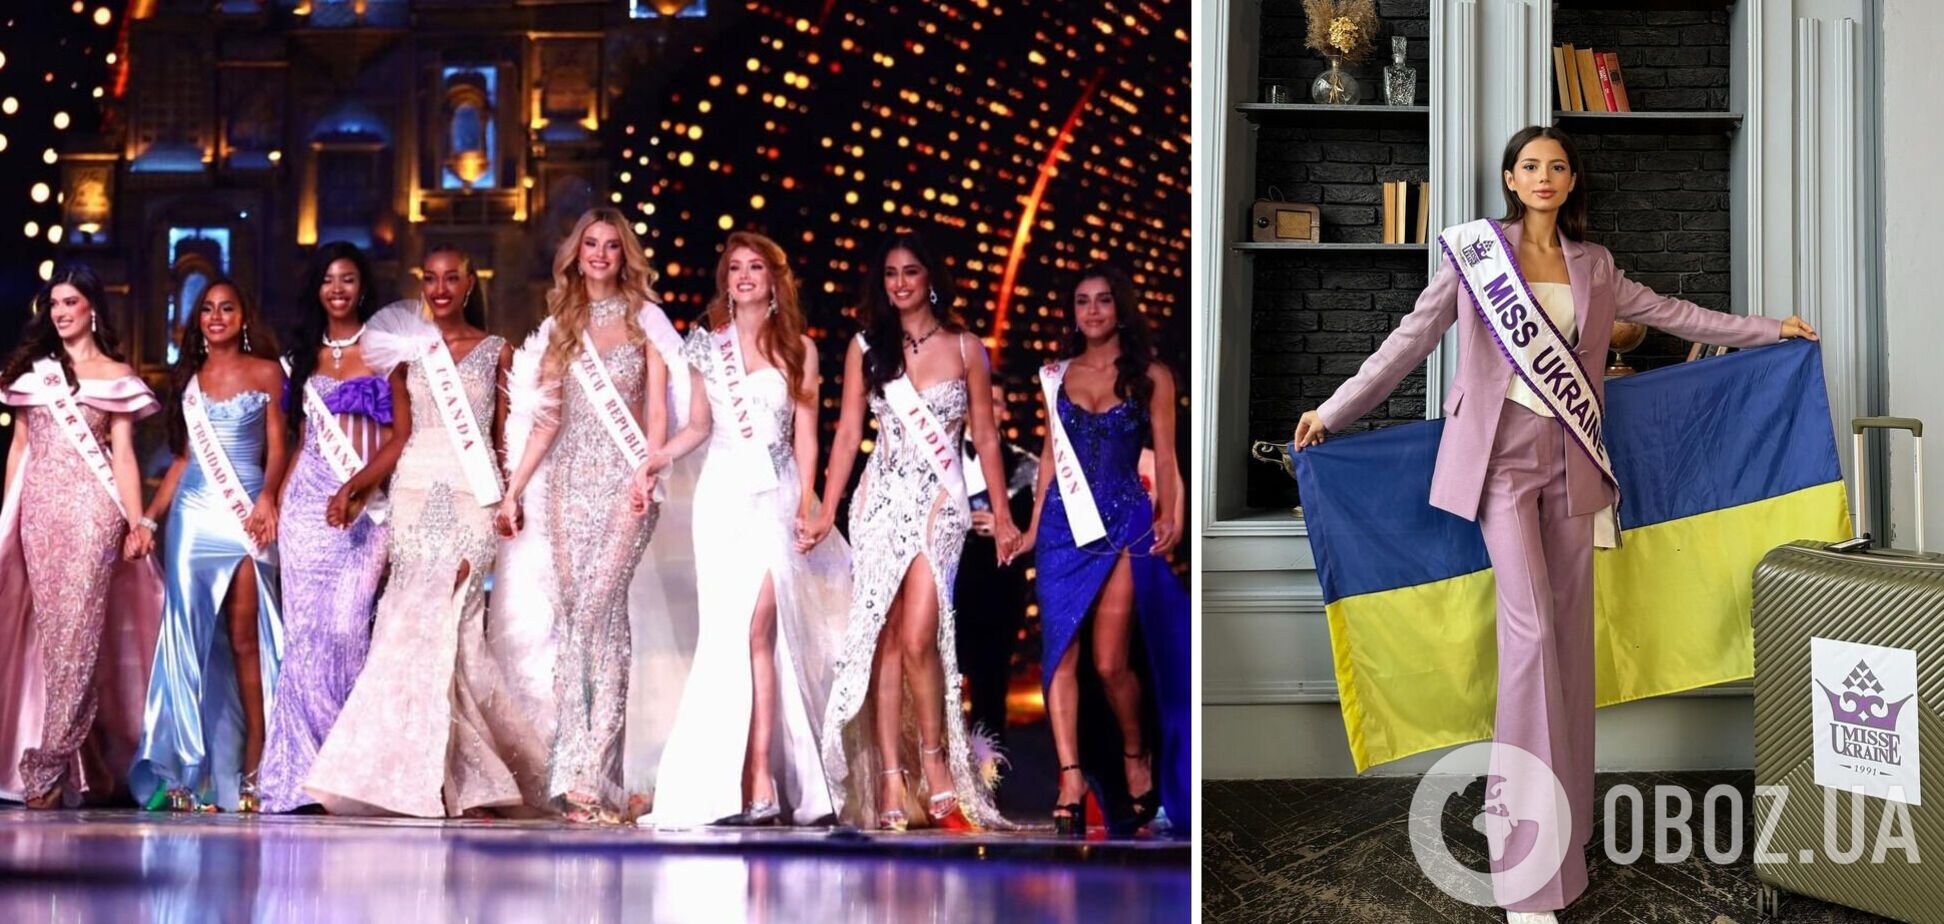 Українка Софія Шамія вибула зі змагання за корону 'Міс Світу 2023': як вона виступила і яке місце посіла